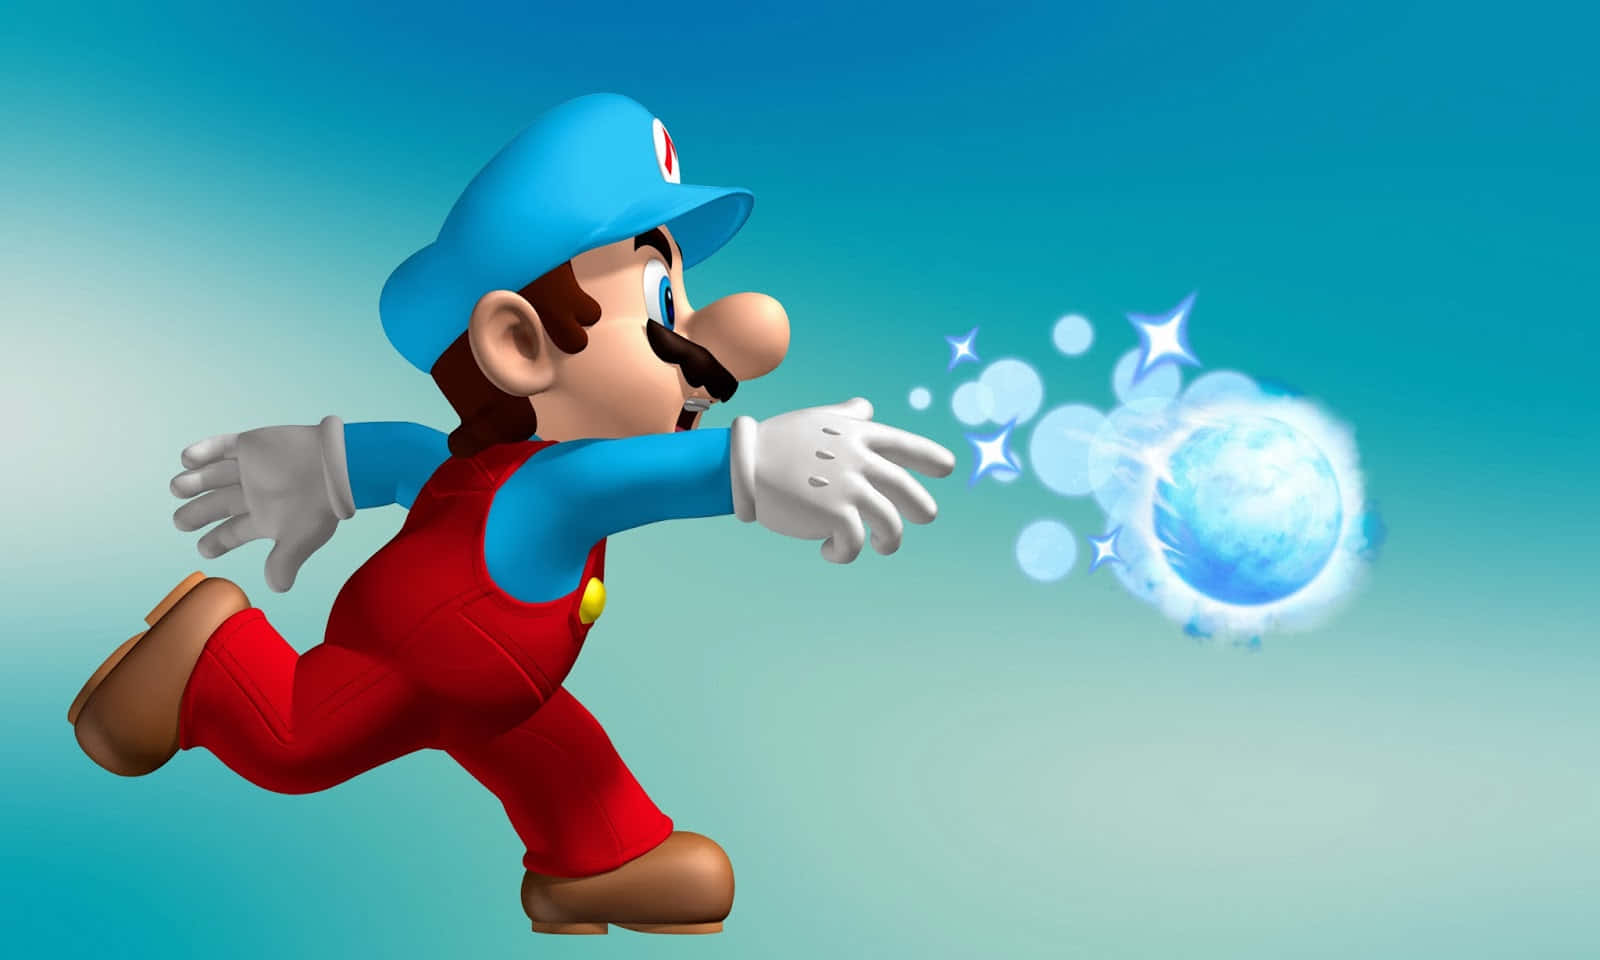 !Oplev en moderne version af det klassiske Mario-eventyr!